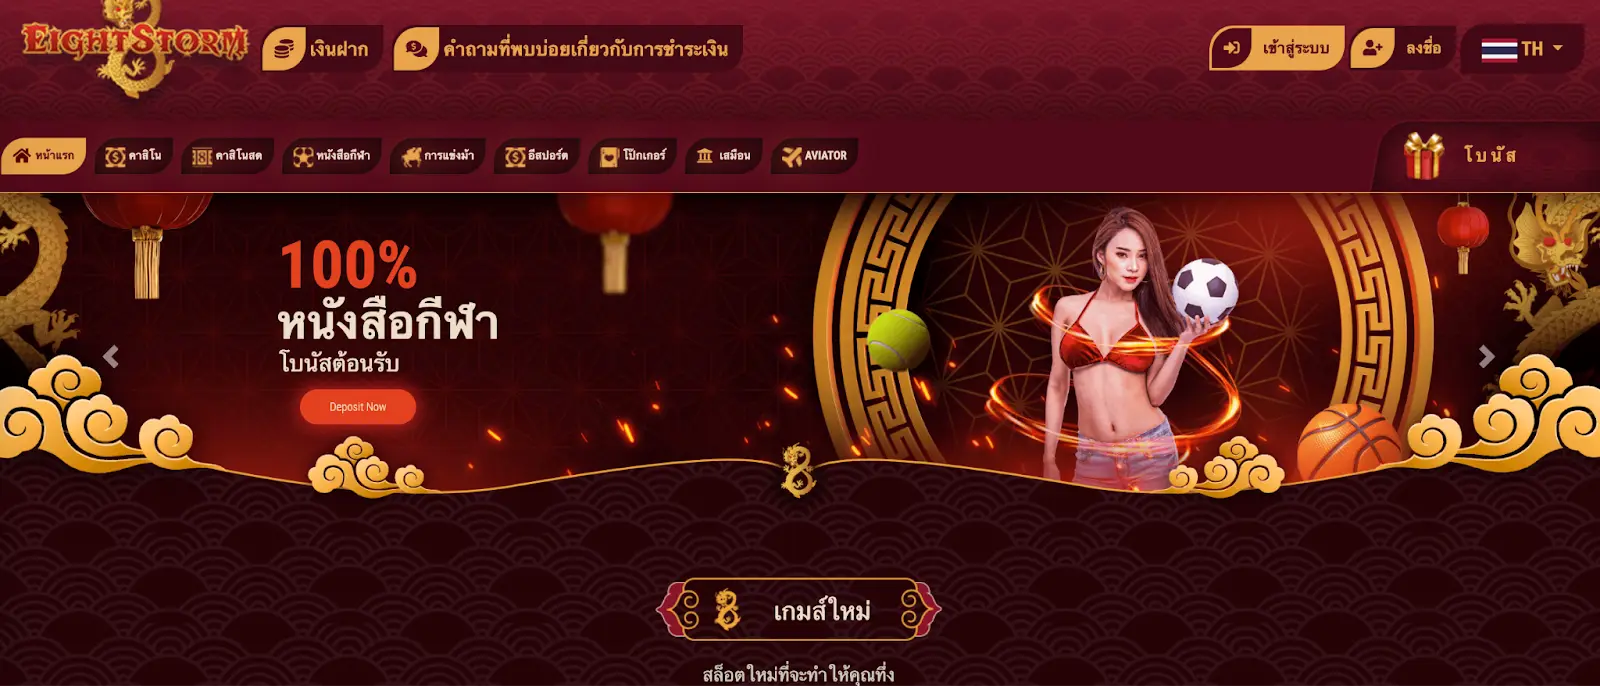 Eightstorm Online Casino Thailand